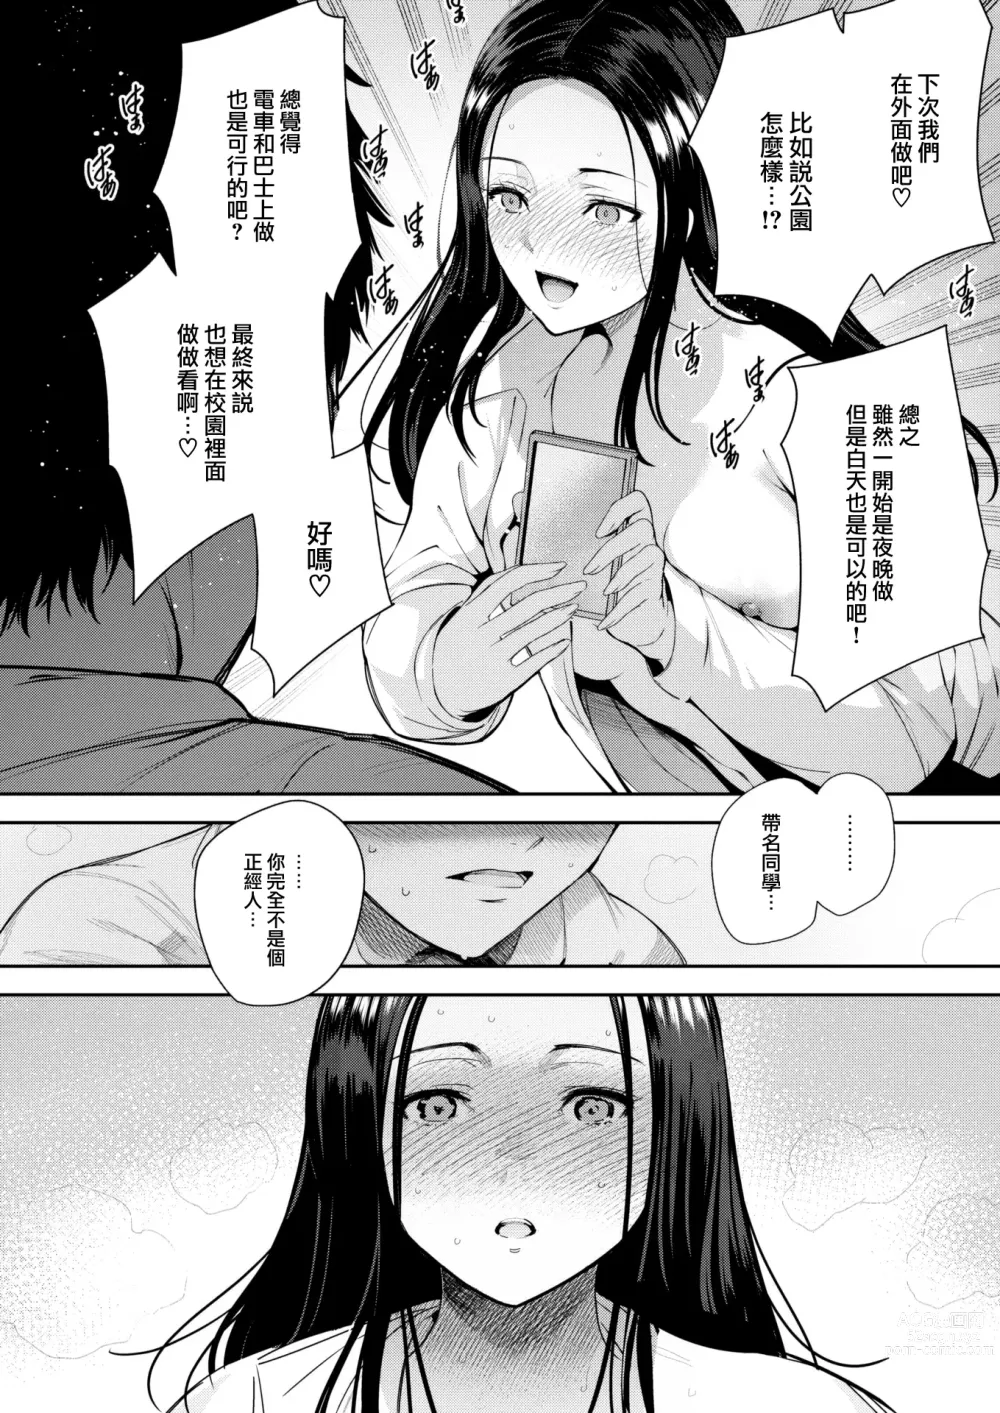 Page 23 of manga Kankou